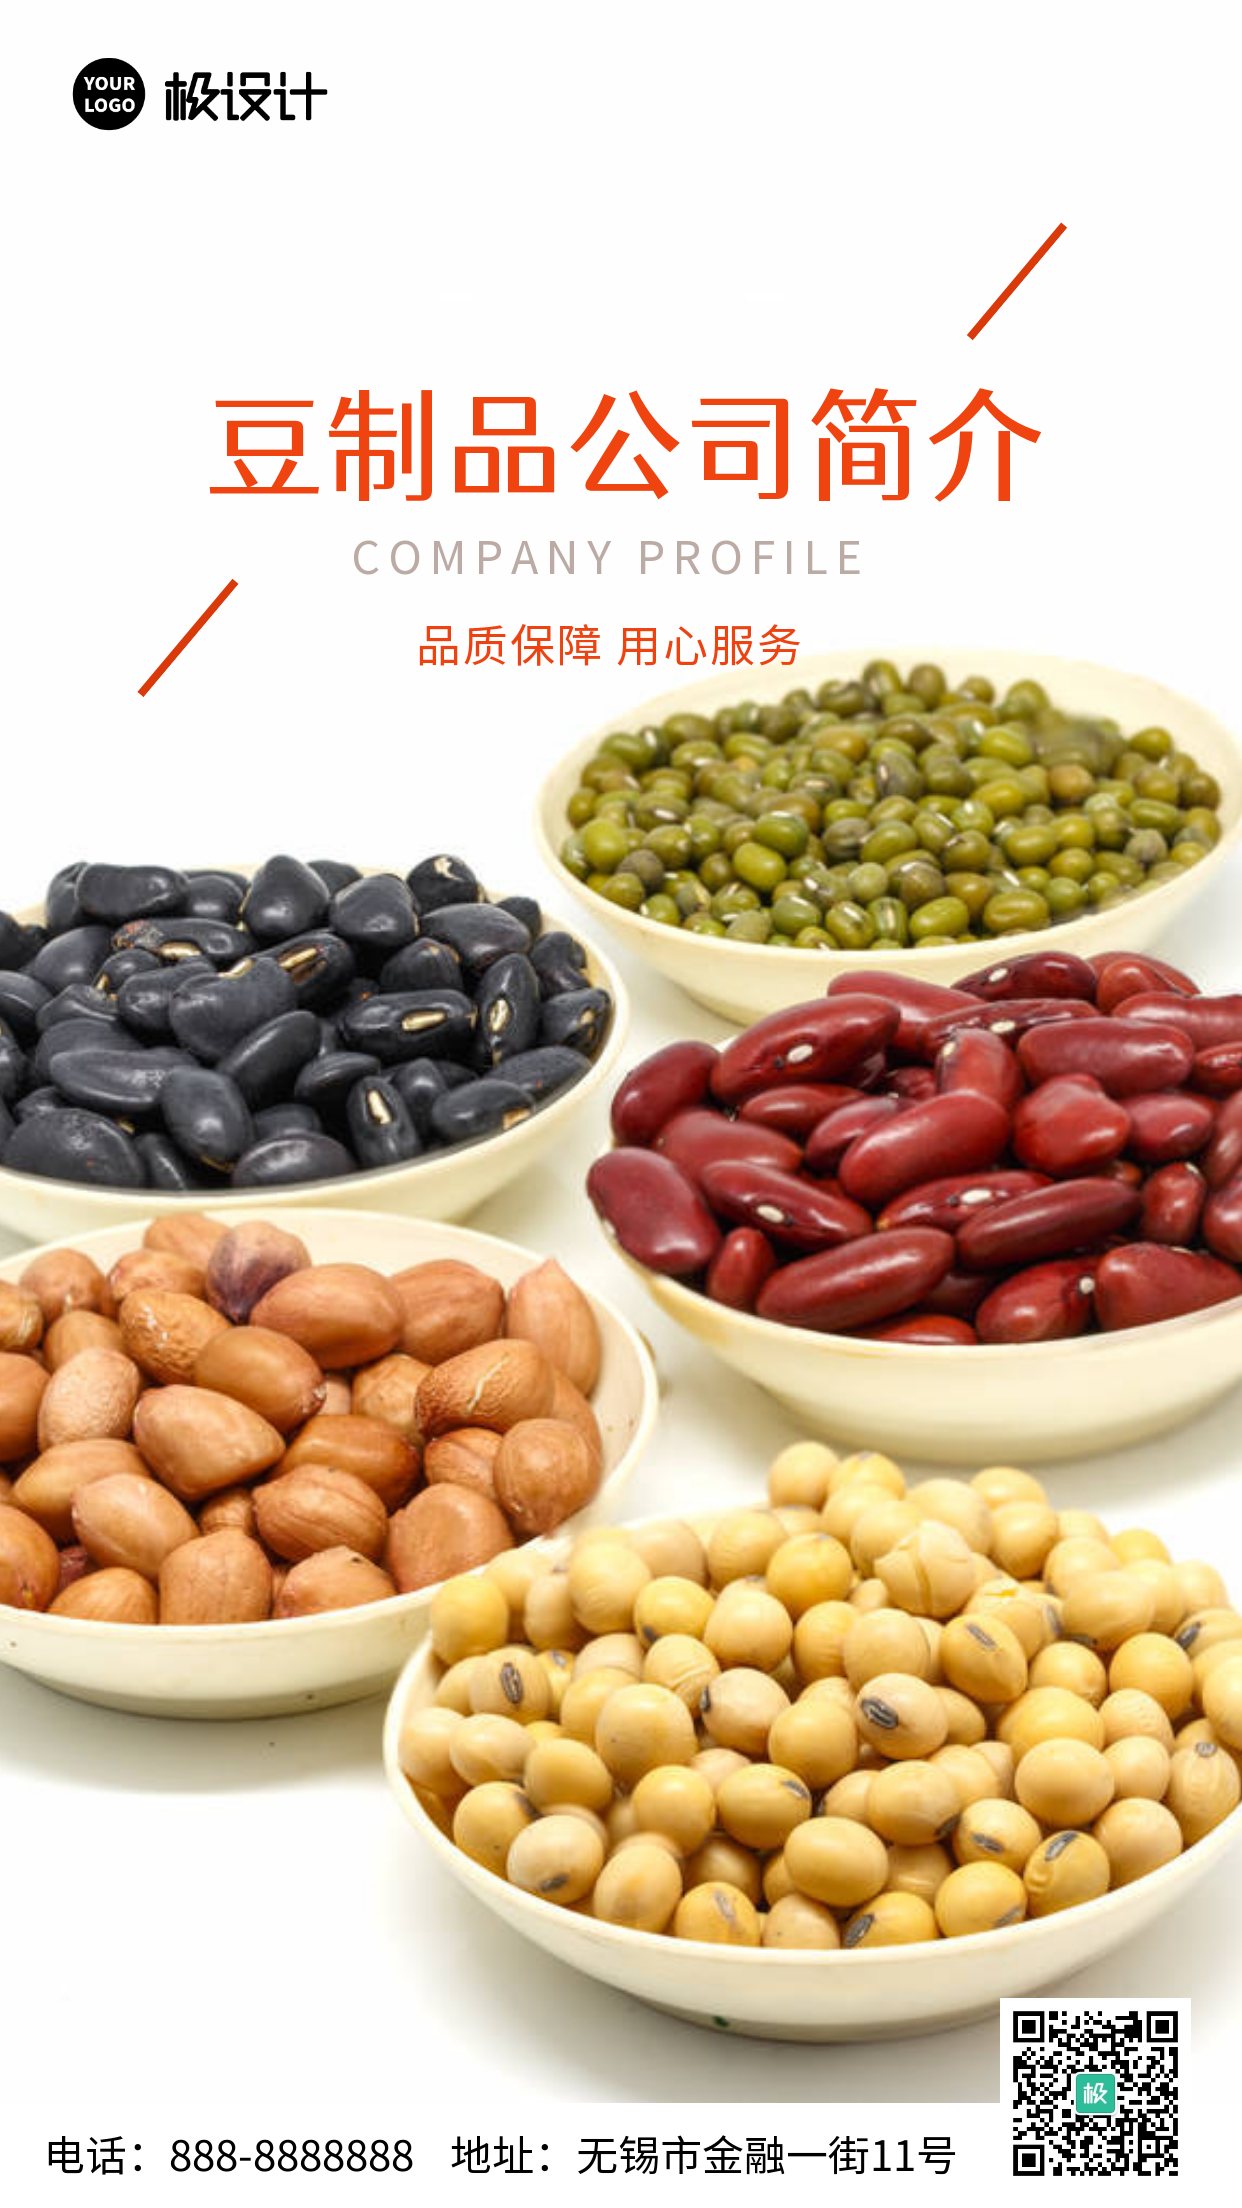 豆制品公司简介红色创意广告传媒手机海报